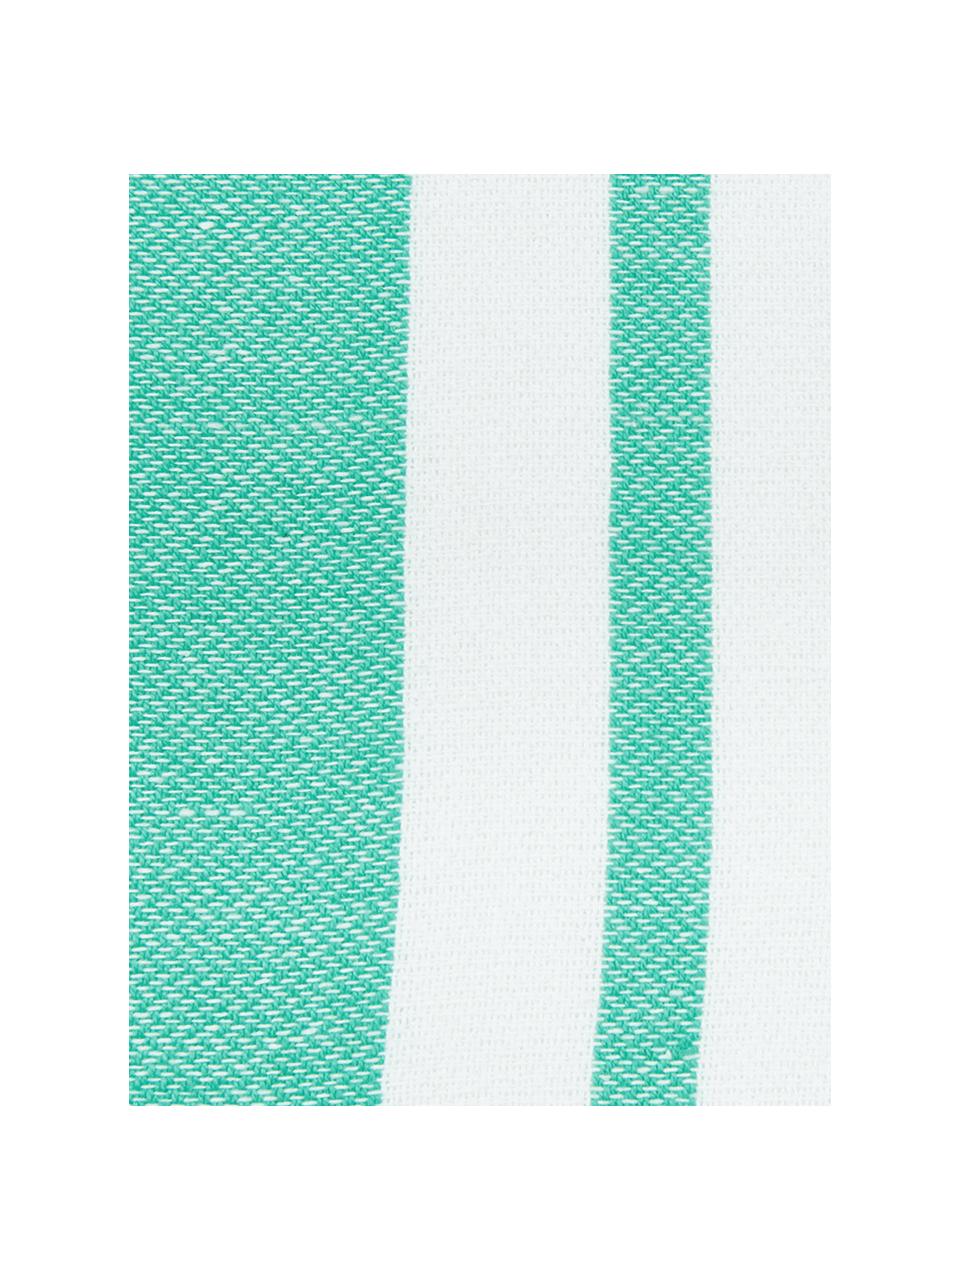 Gestreiftes Hamamtuch Stripy mit Fransenabschluss, 100% Baumwolle
Sehr leichte Qualität, 185 g/m², Türkis, Weiß, 95 x 175 cm